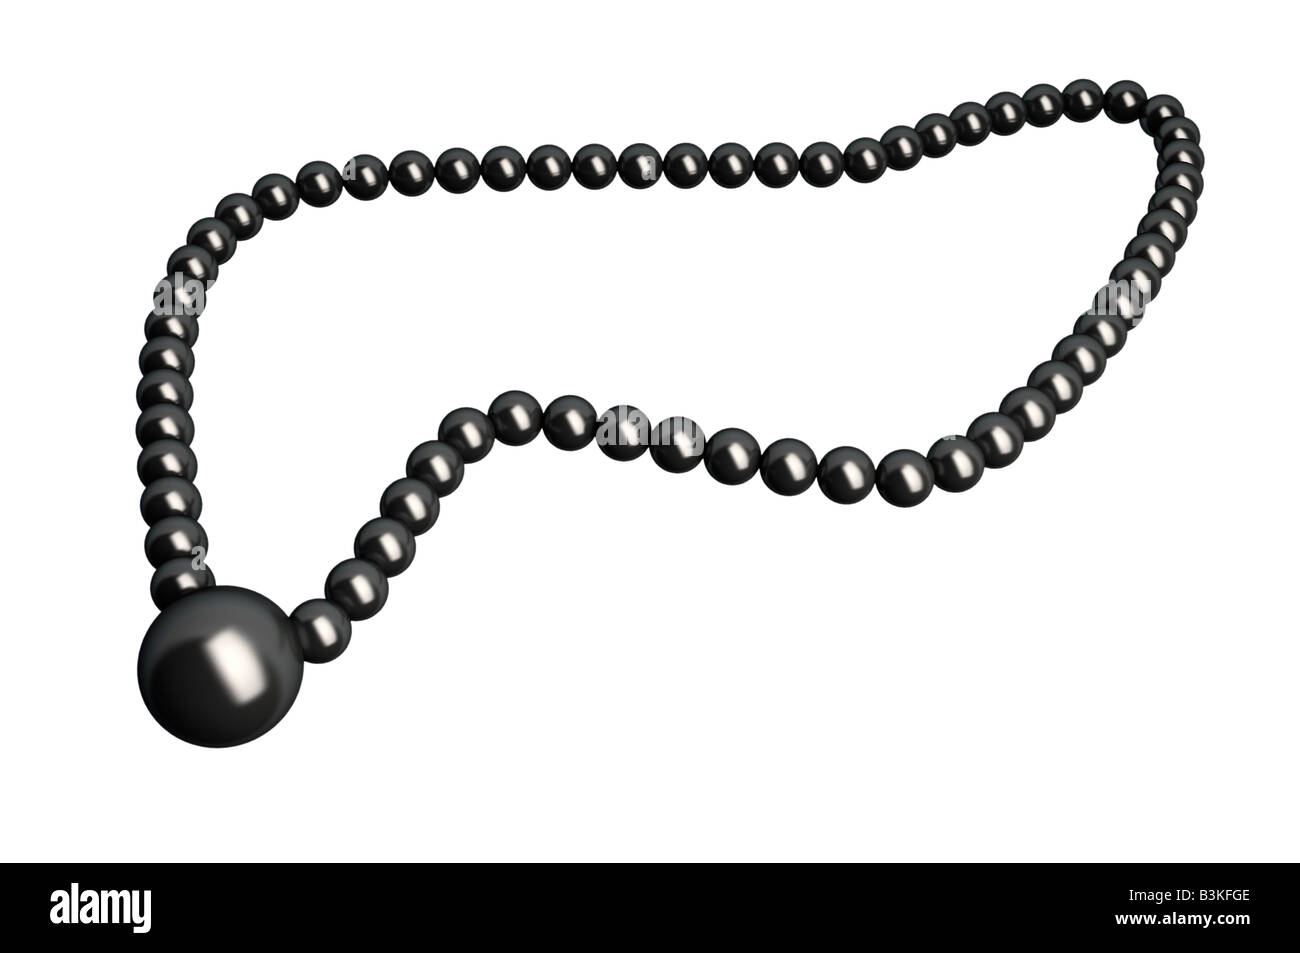 La perla negra Imágenes de stock en blanco y negro - Alamy